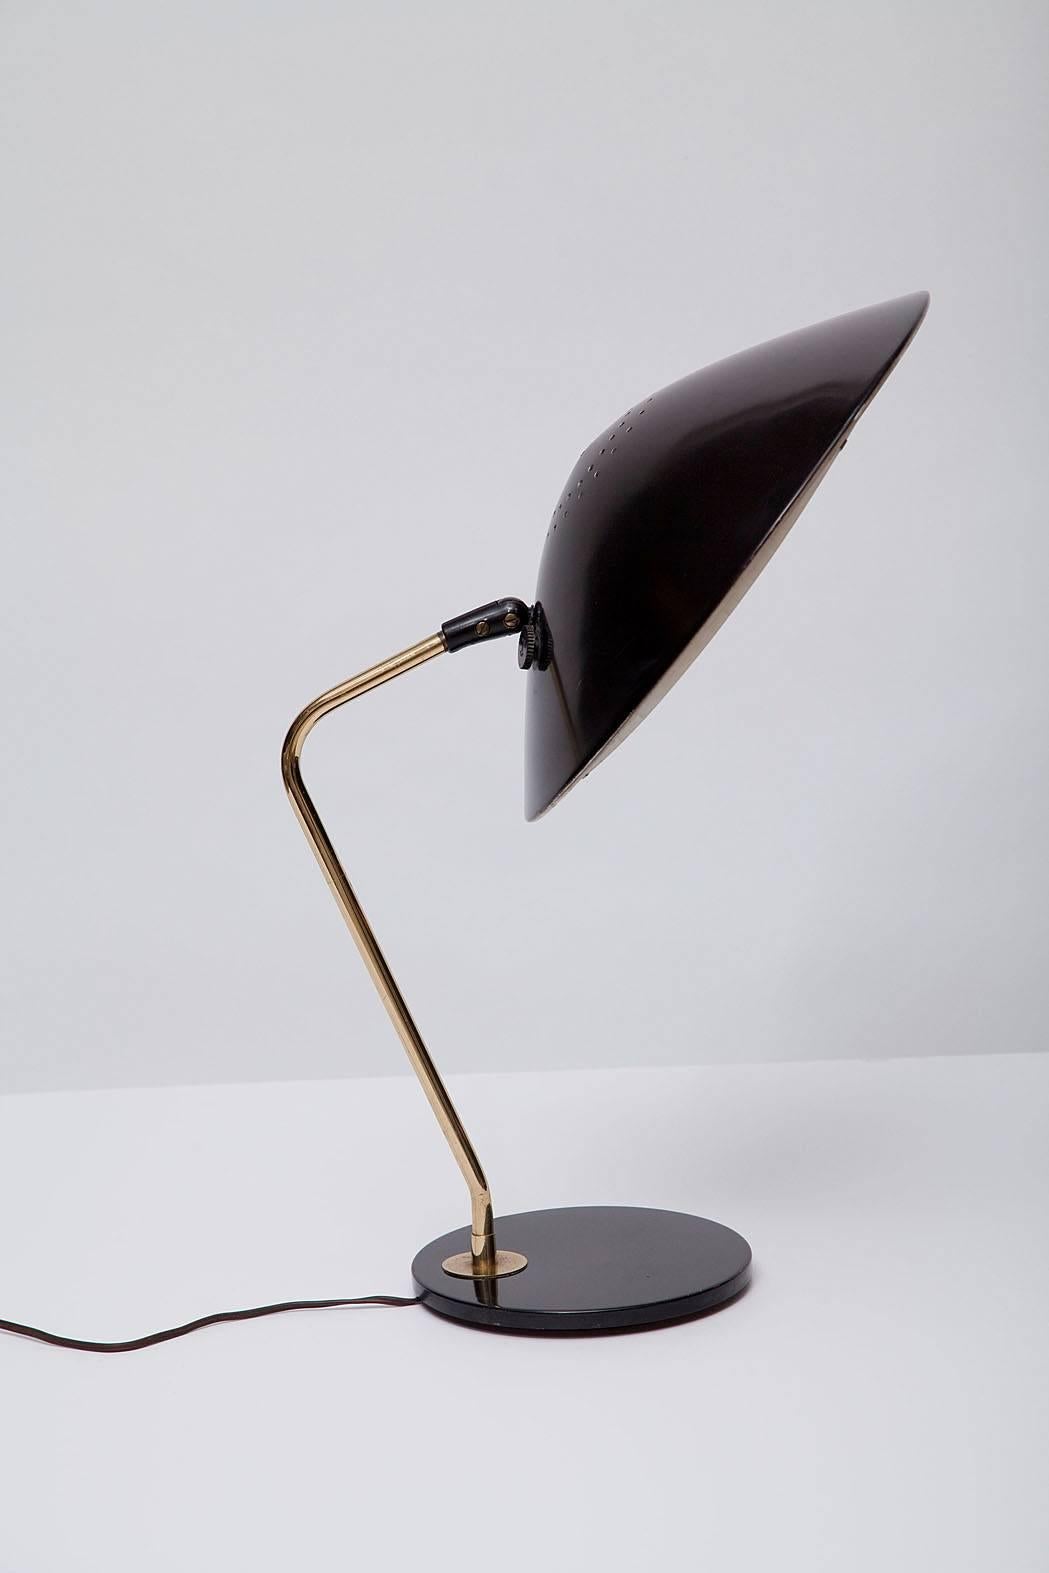 American Desk Lamp by Gerald Thurston for Lightolier